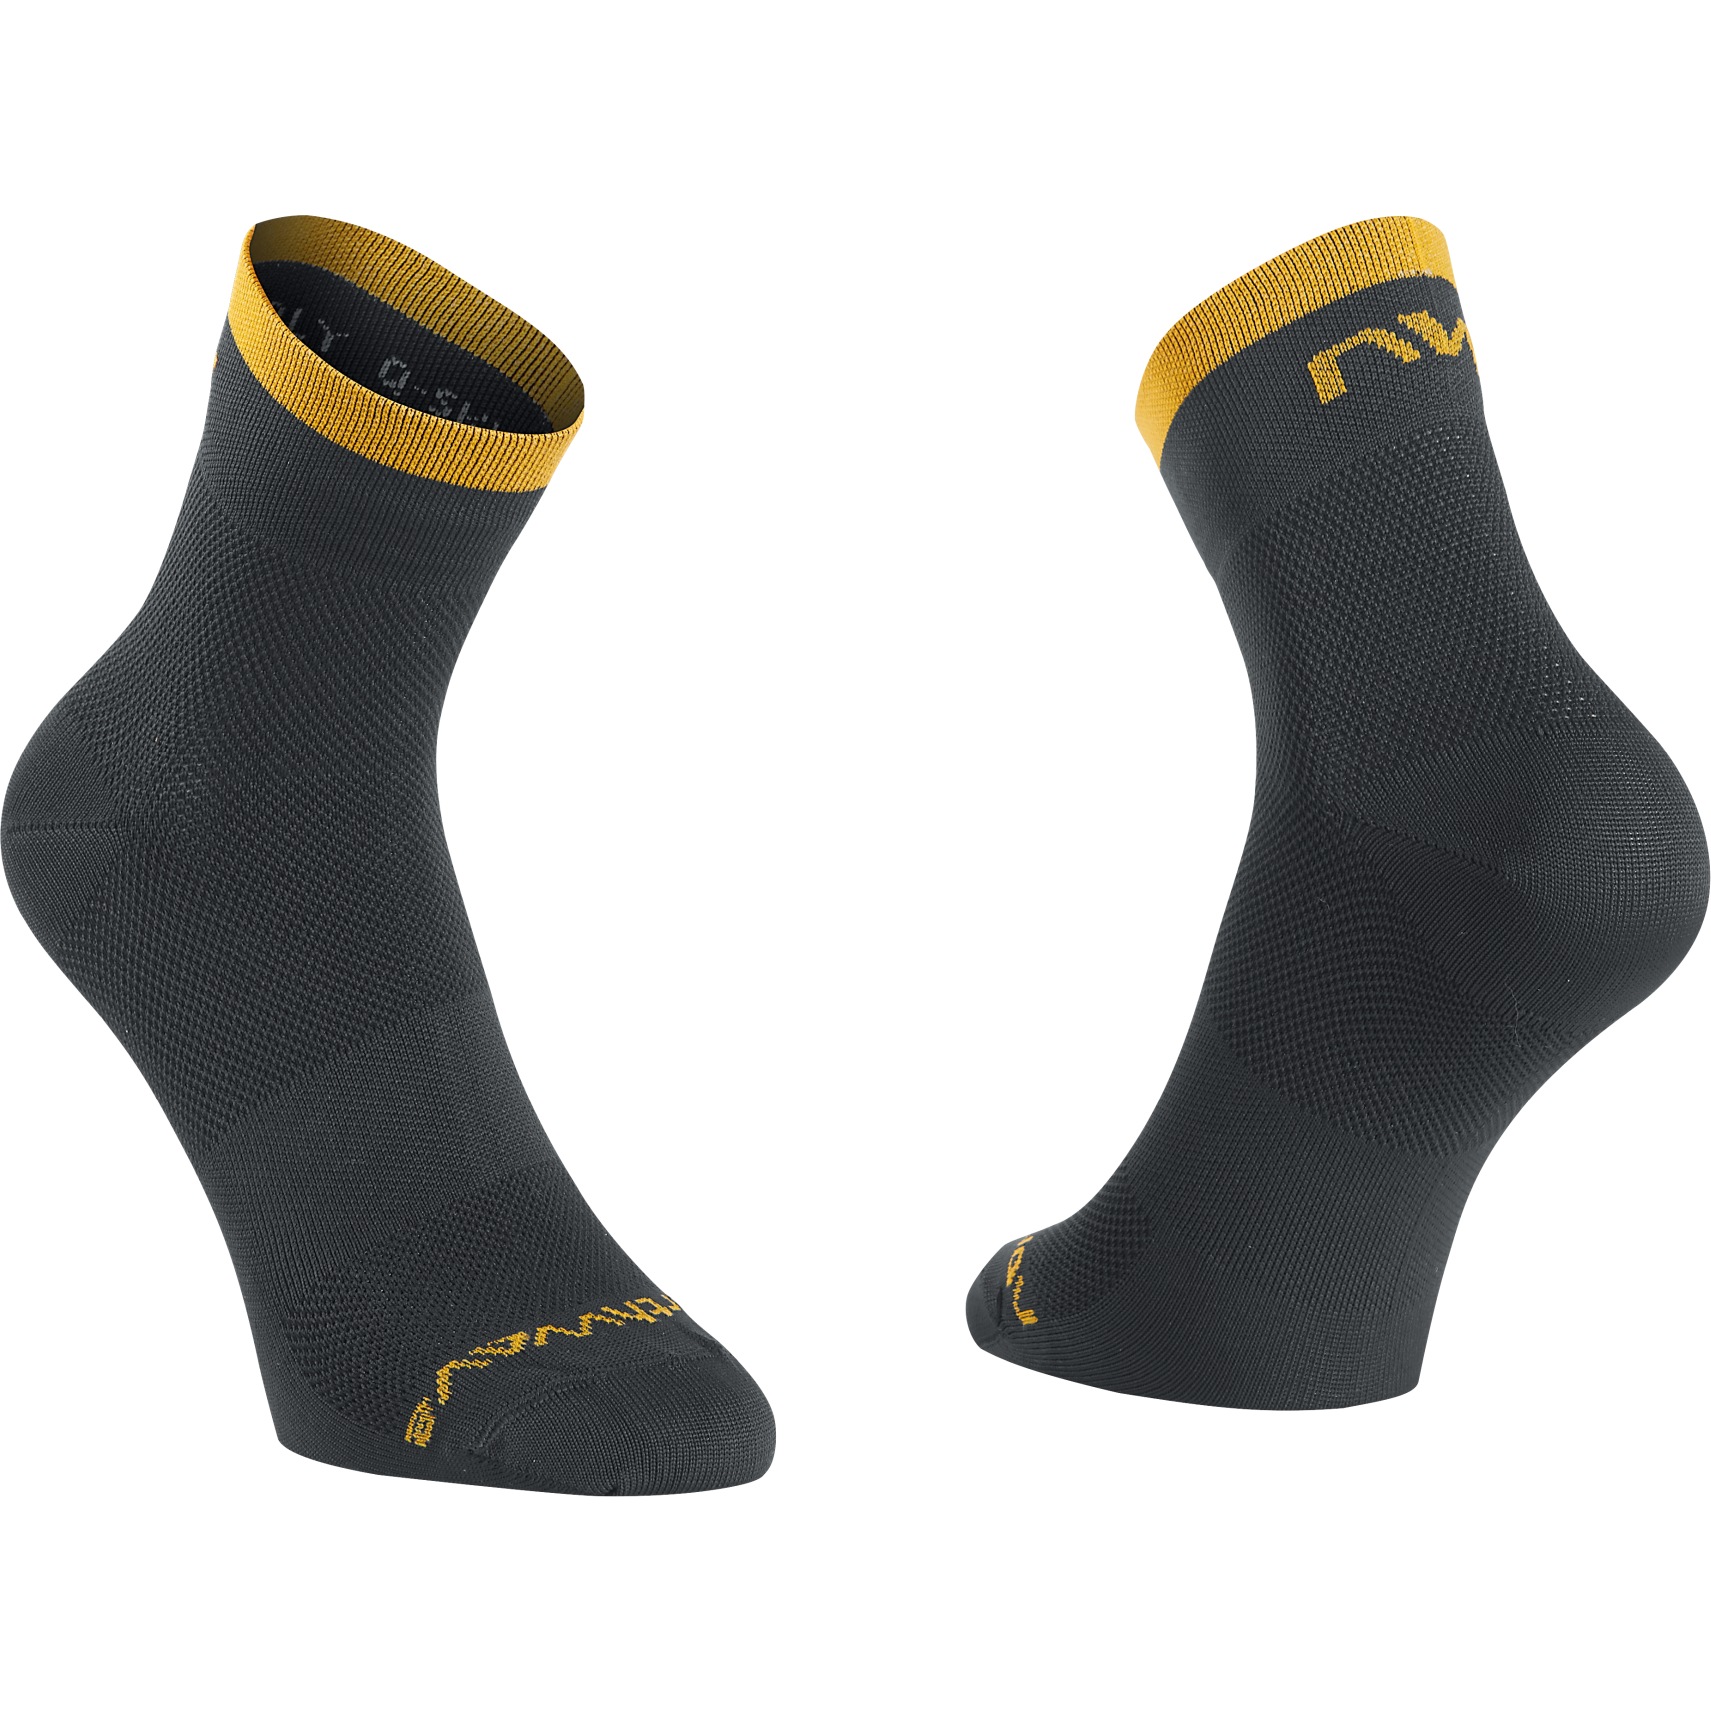 Produktbild von Northwave Origin Socken - schwarz/ochre 110